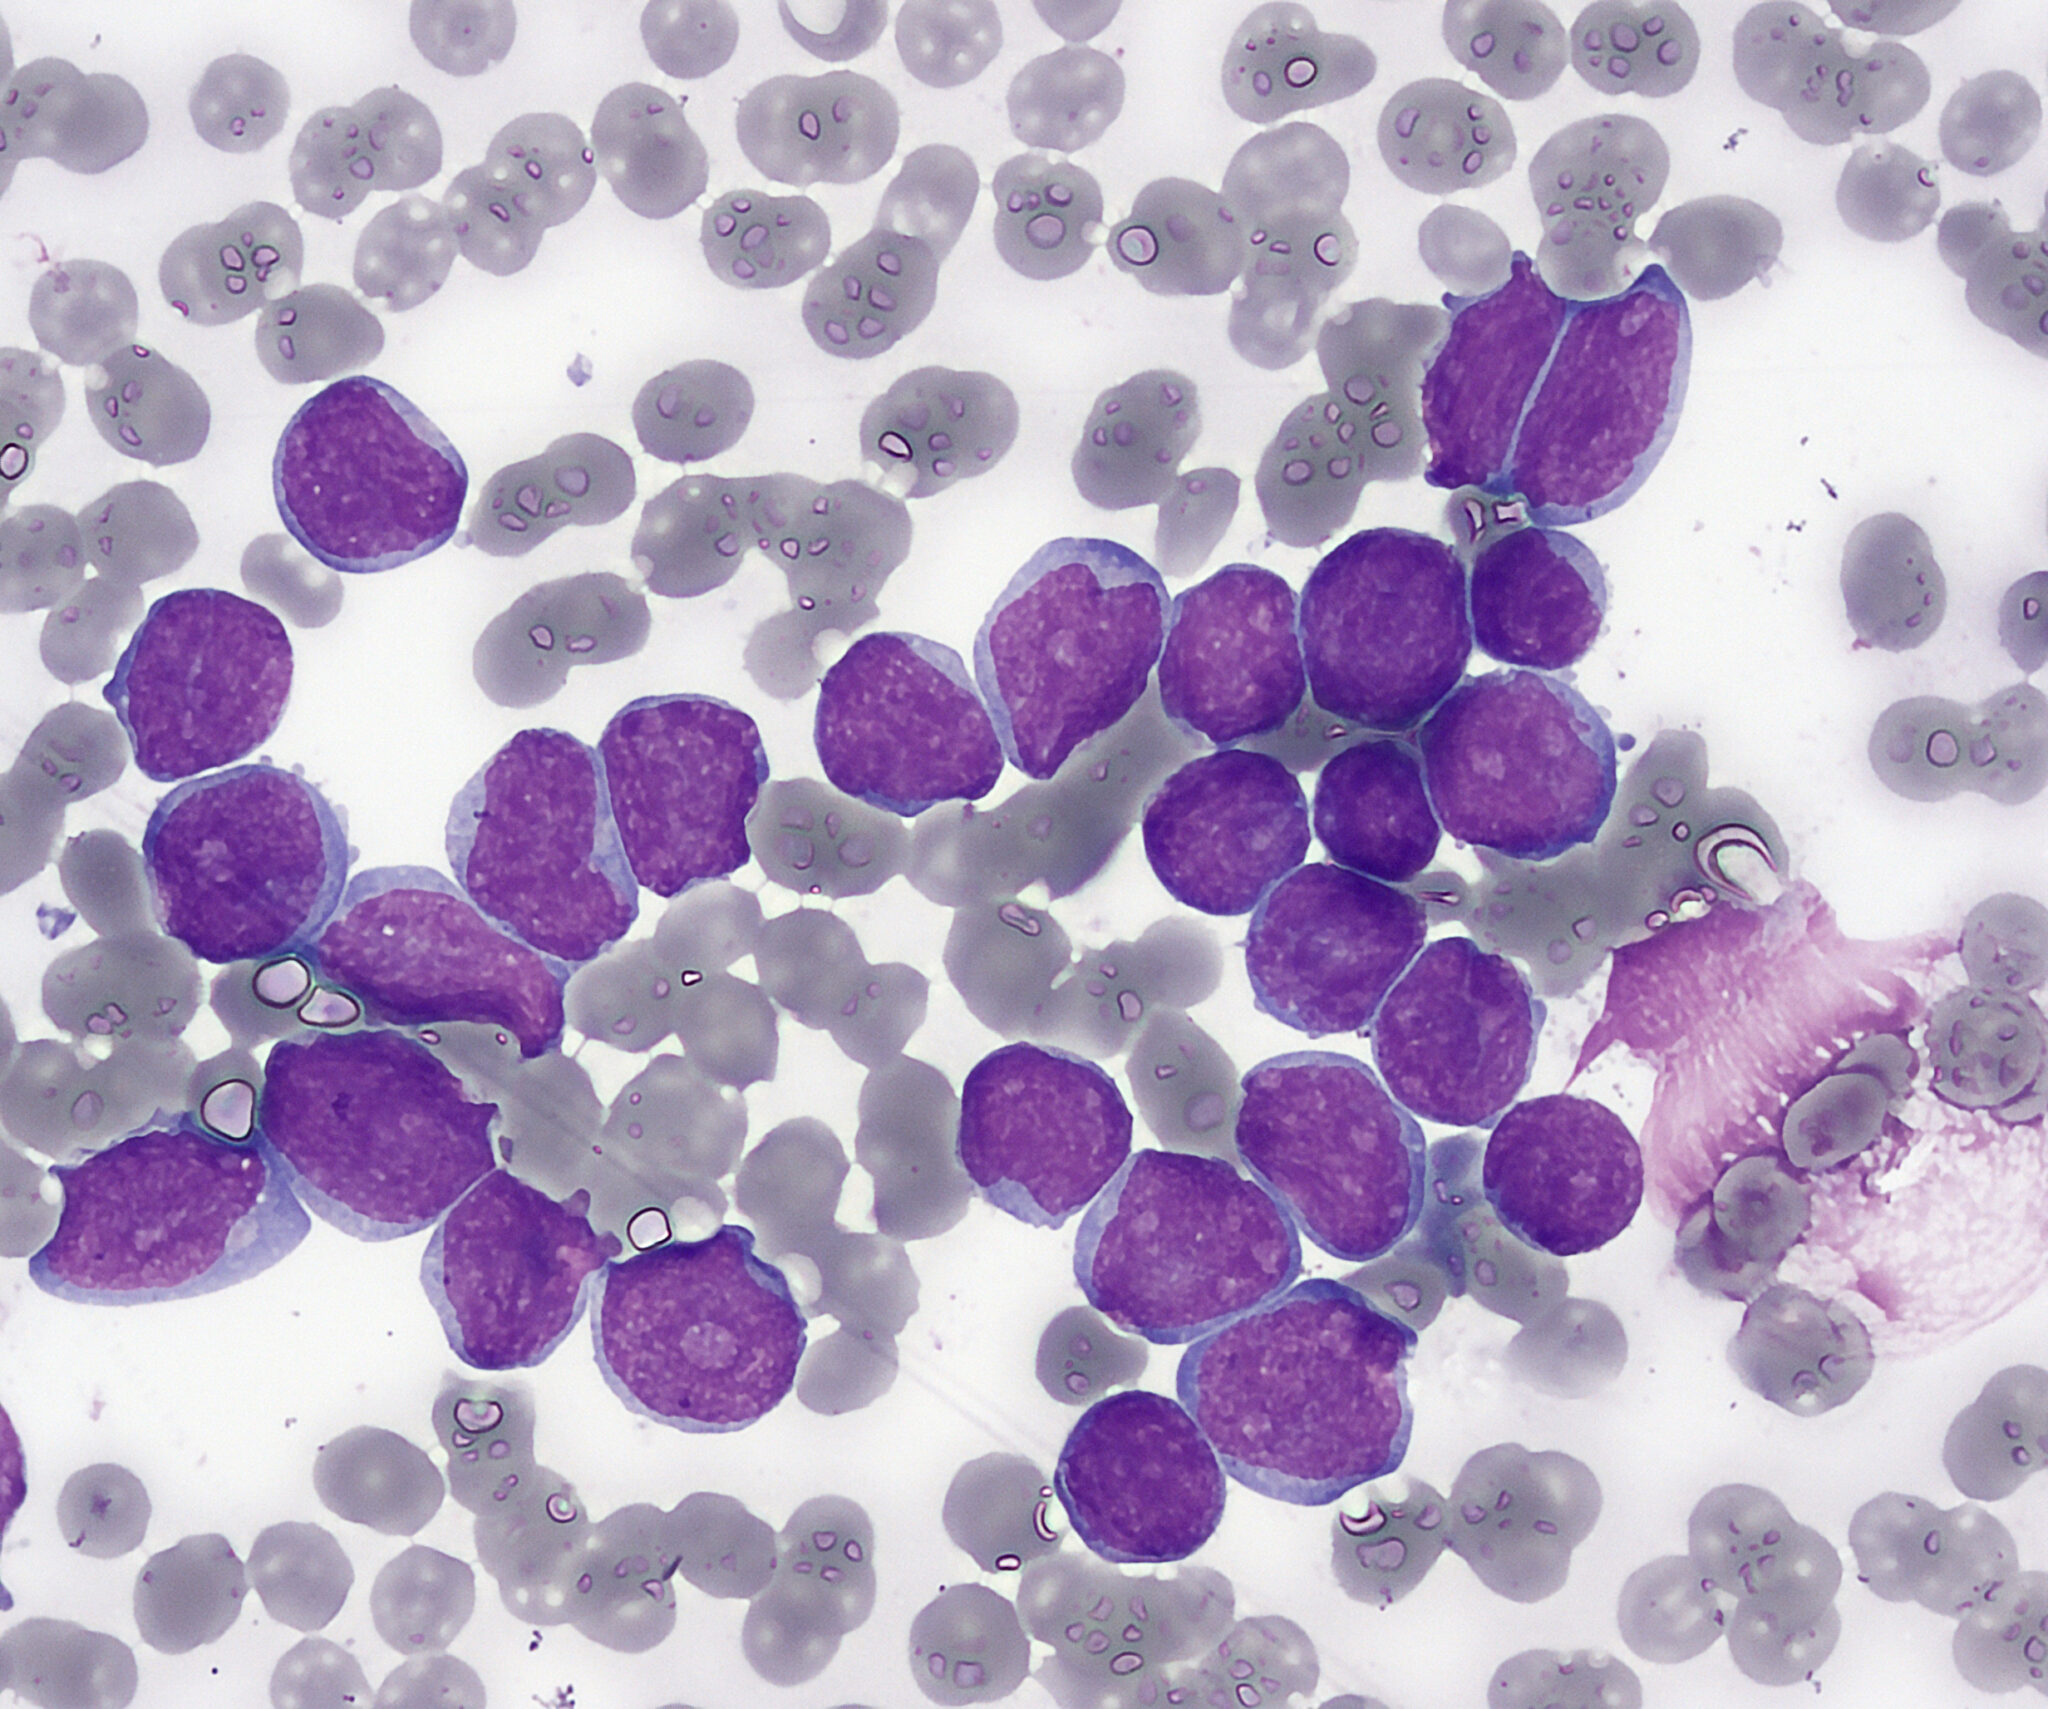 acute lymphoblastic leukemia